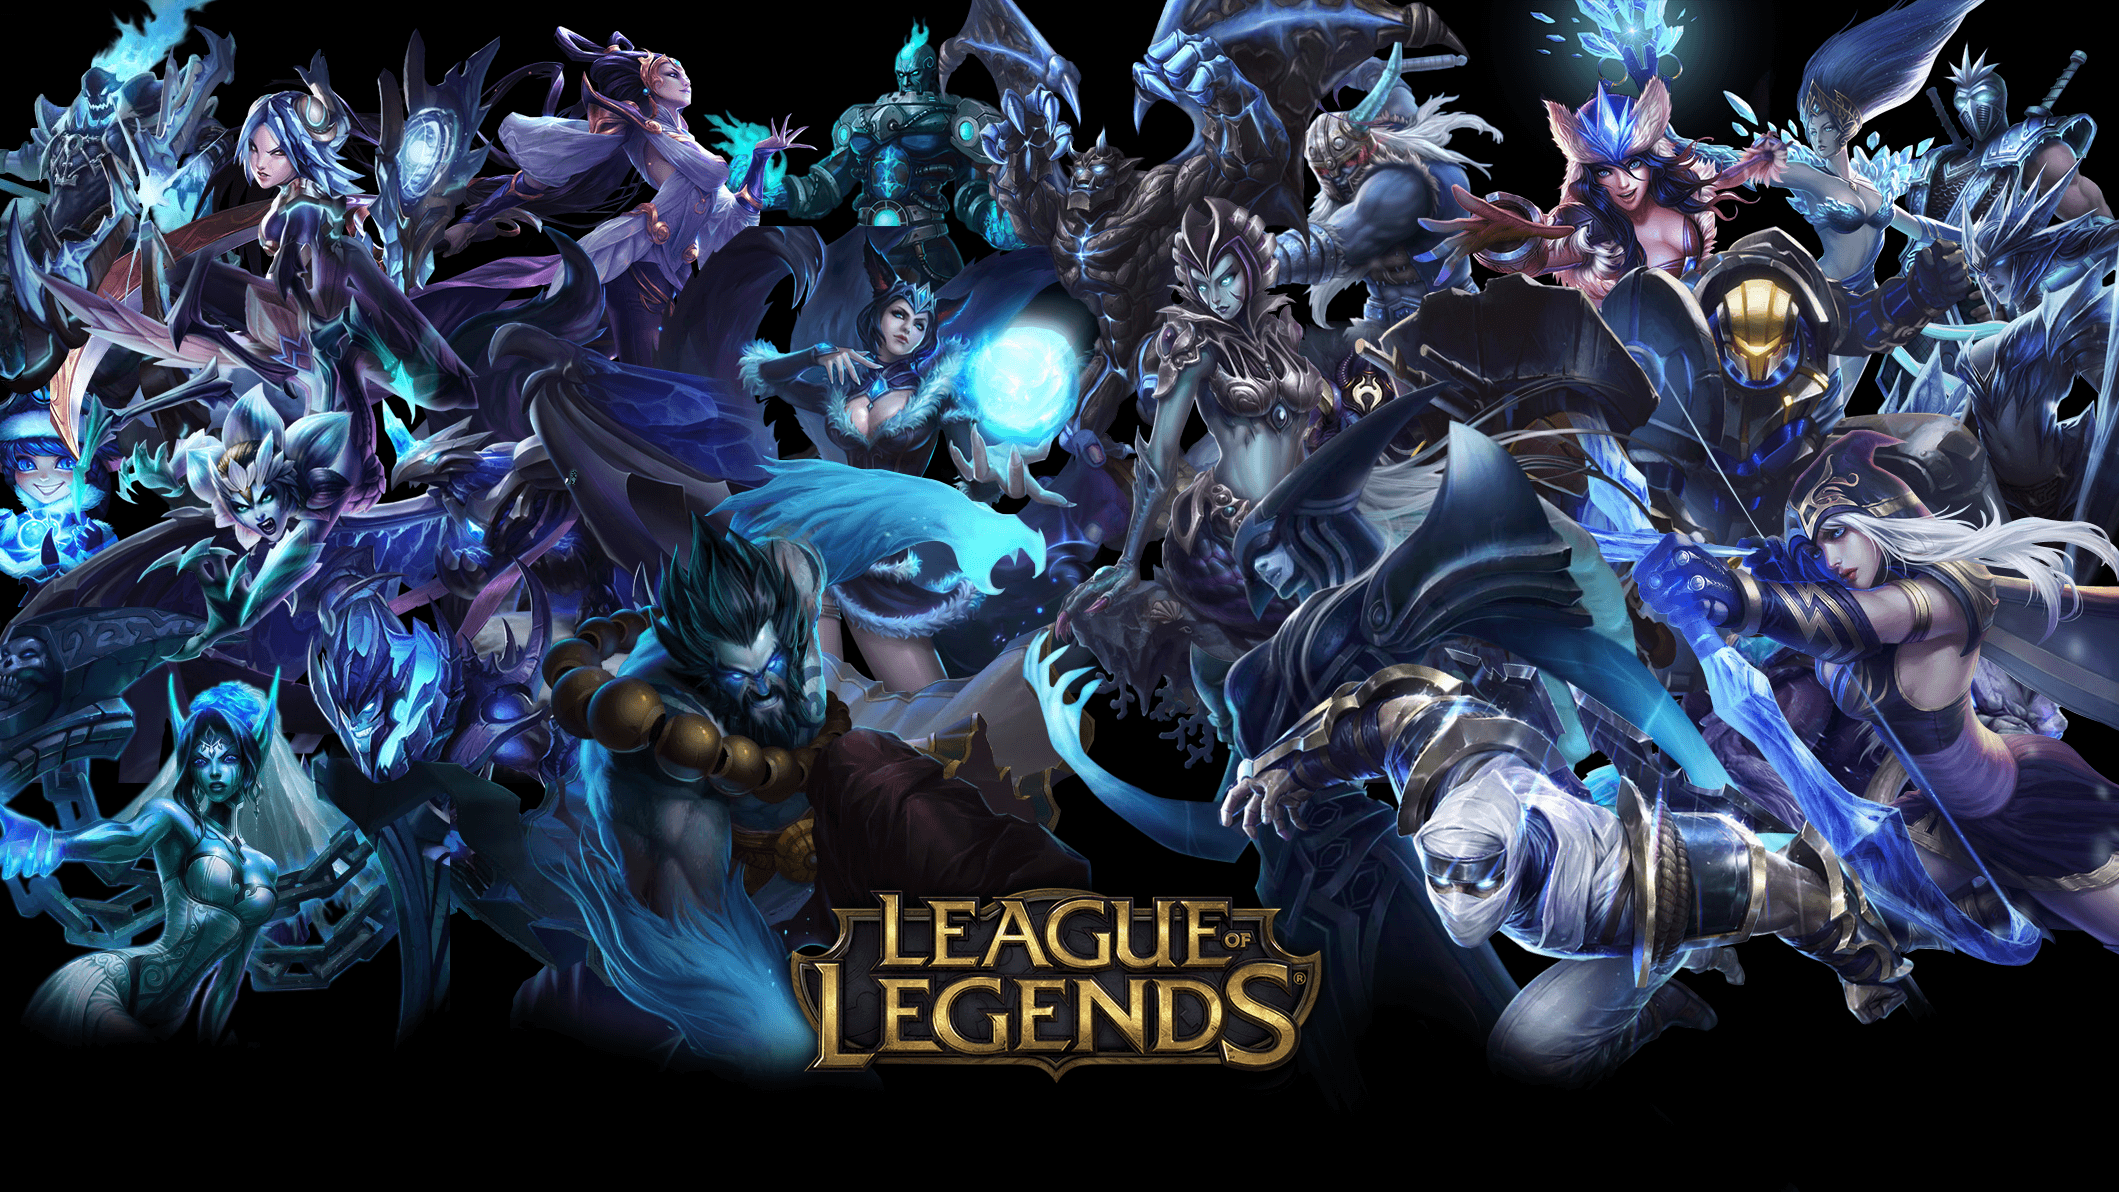 League of legends wallpapers â